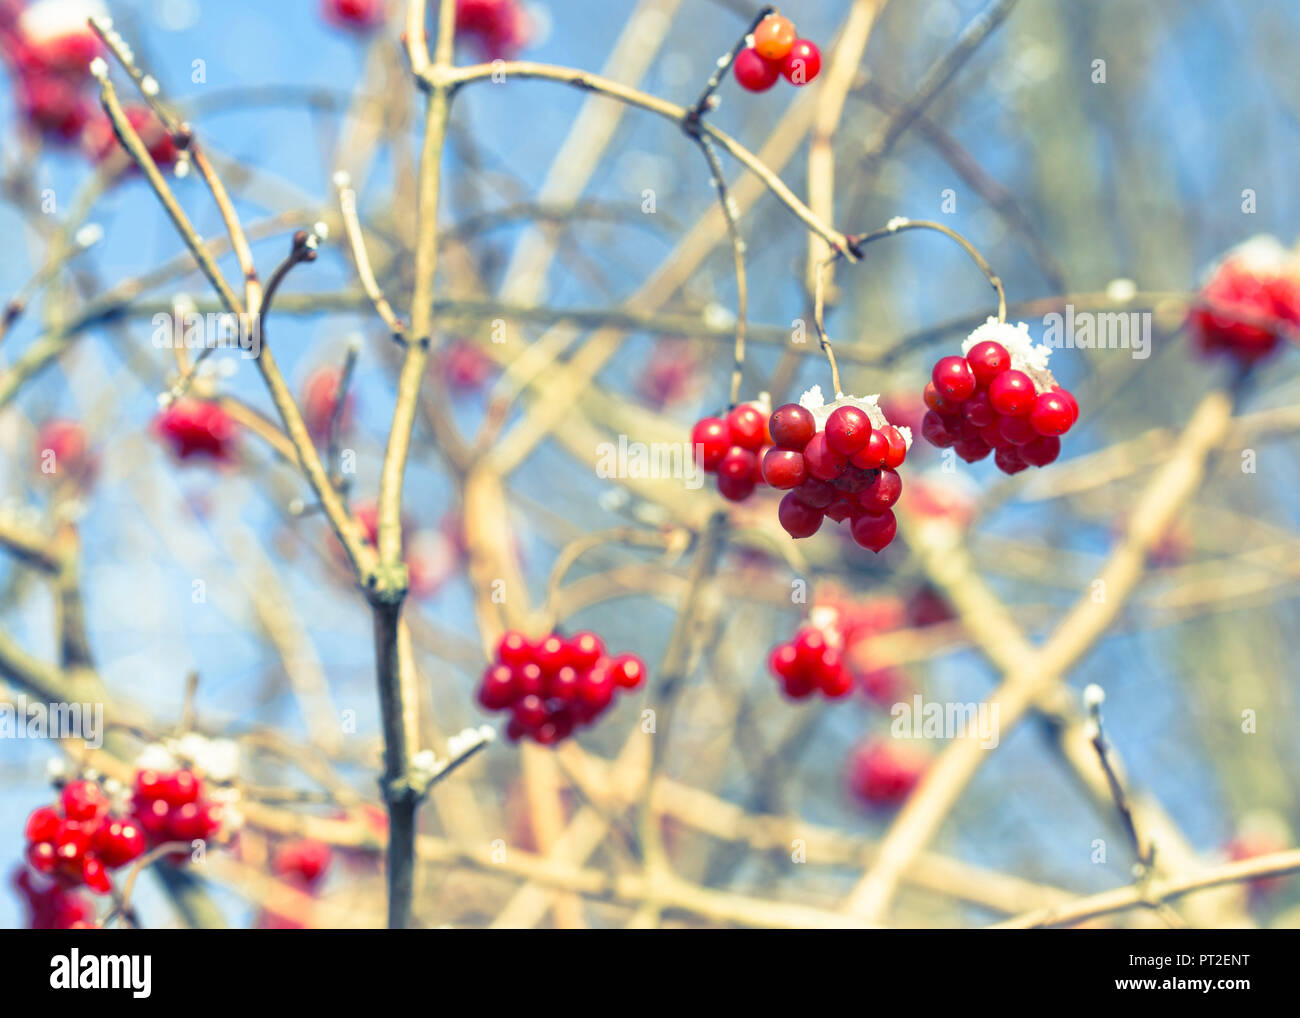 Fruits of the common viburnum in winter, Viburnum opulus, Adoxaceae, Cross processing, Stock Photo